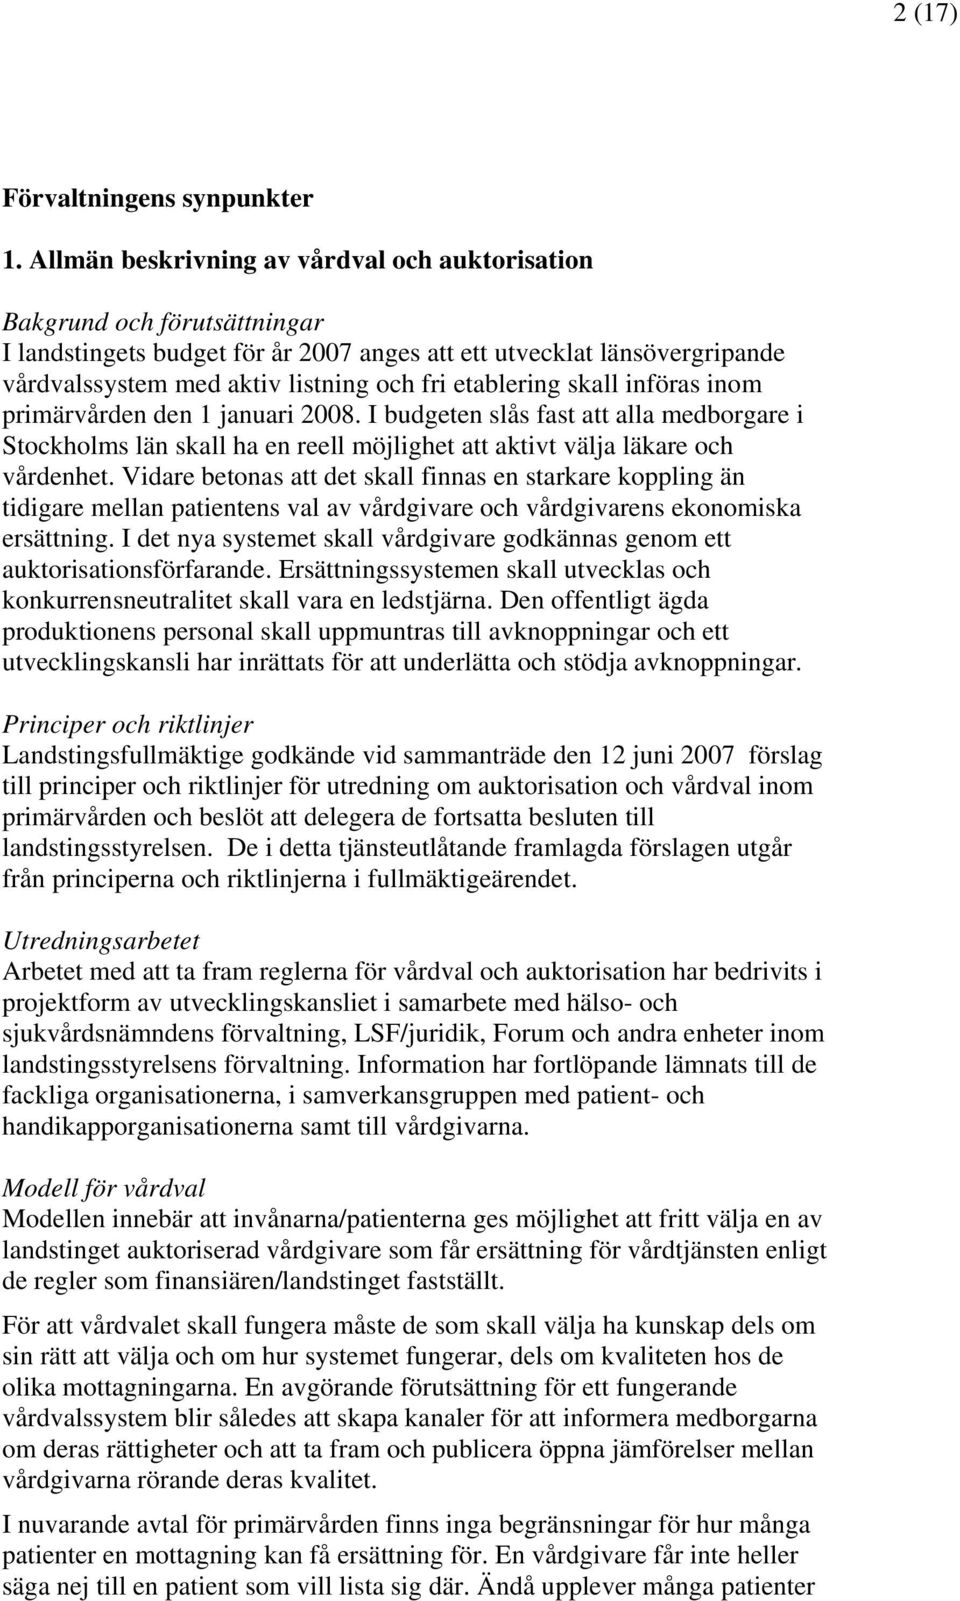 etablering skall införas inom primärvården den 1 januari 2008. I budgeten slås fast att alla medborgare i Stockholms län skall ha en reell möjlighet att aktivt välja läkare och vårdenhet.